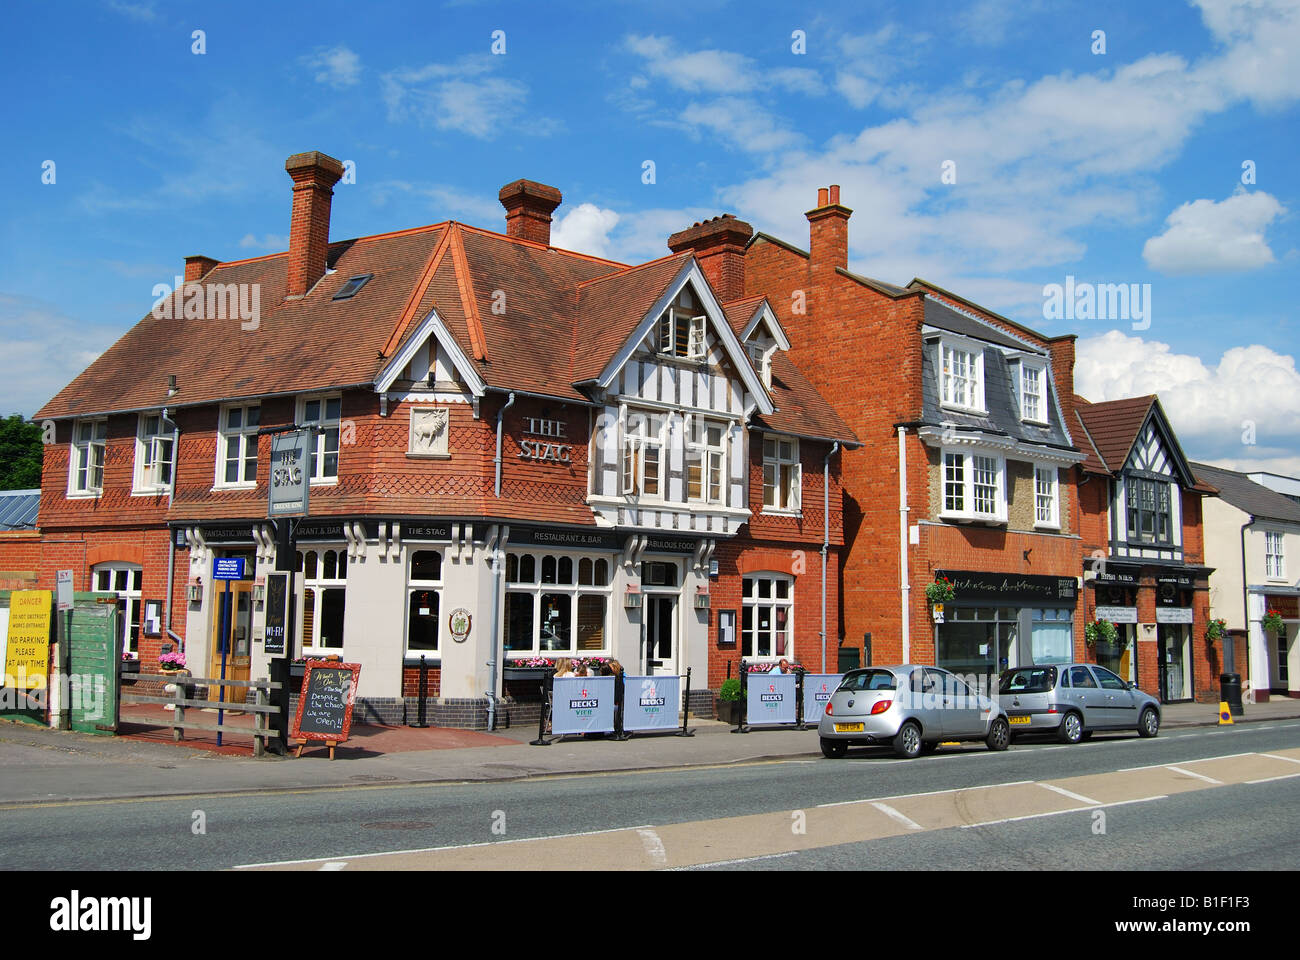 Le 16ème siècle, l'Ascot Pub Stag High Street, l'Ascot, Berkshire, Angleterre, Royaume-Uni Banque D'Images